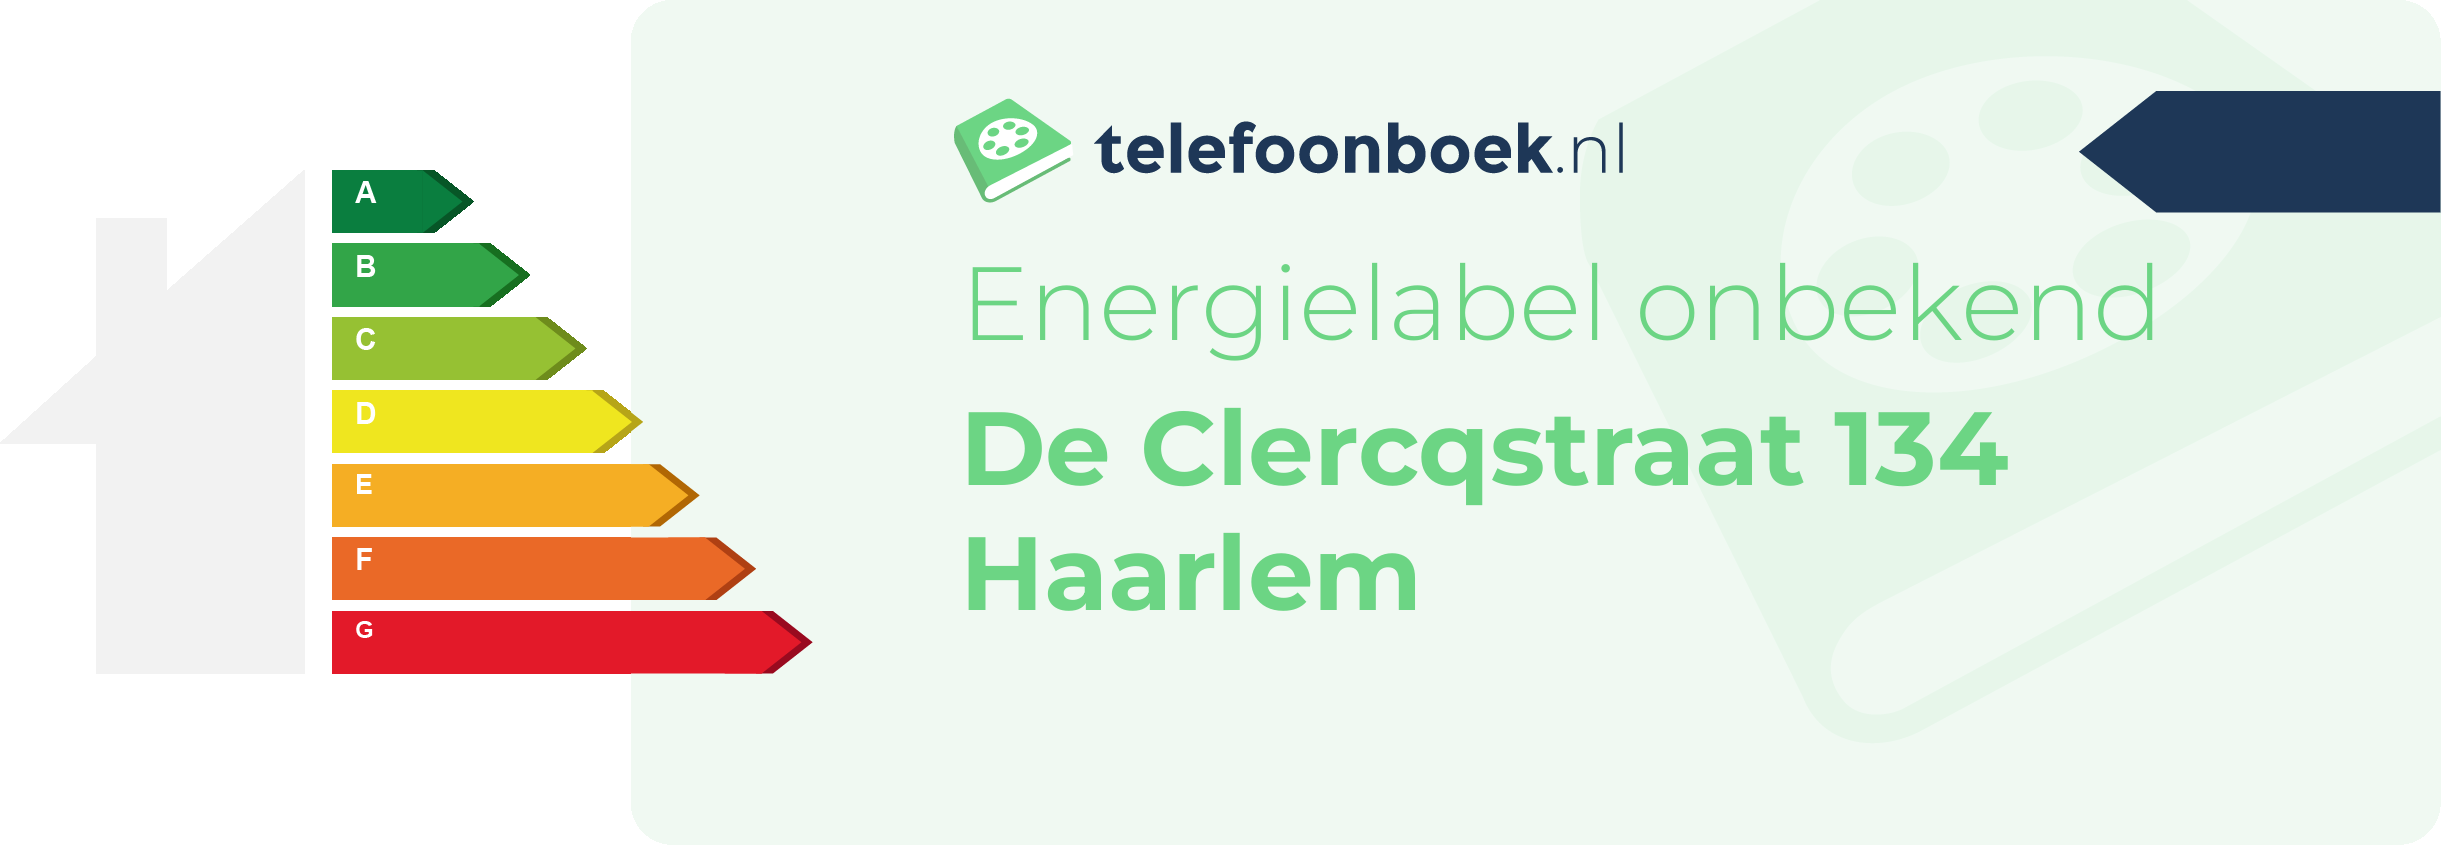 Energielabel De Clercqstraat 134 Haarlem